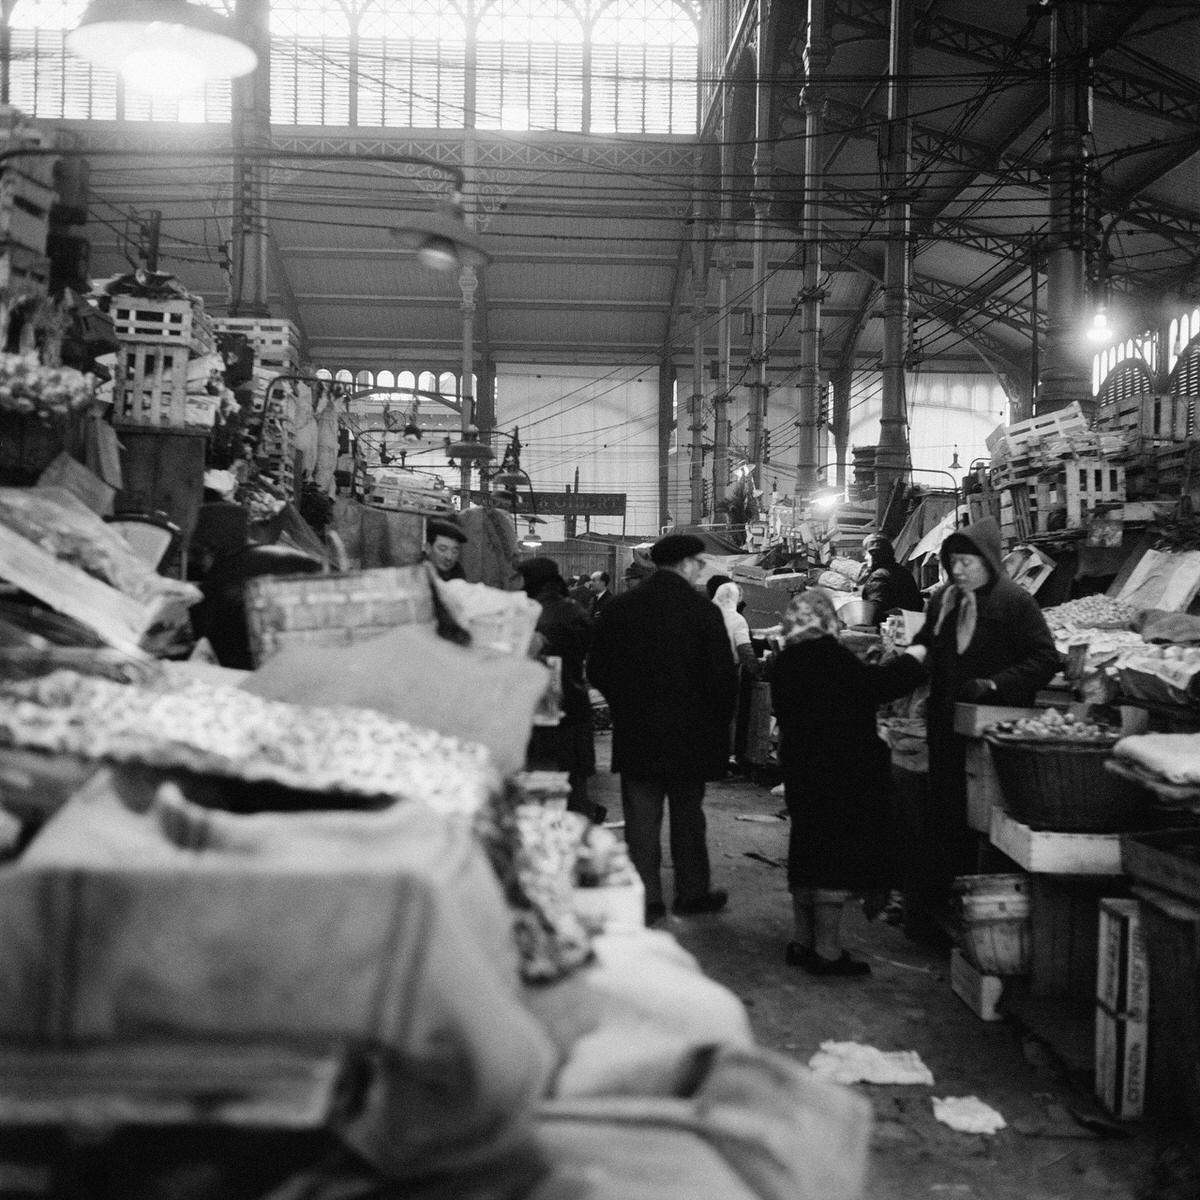 People shopping at Paris Les Halles Central Market, 1960s